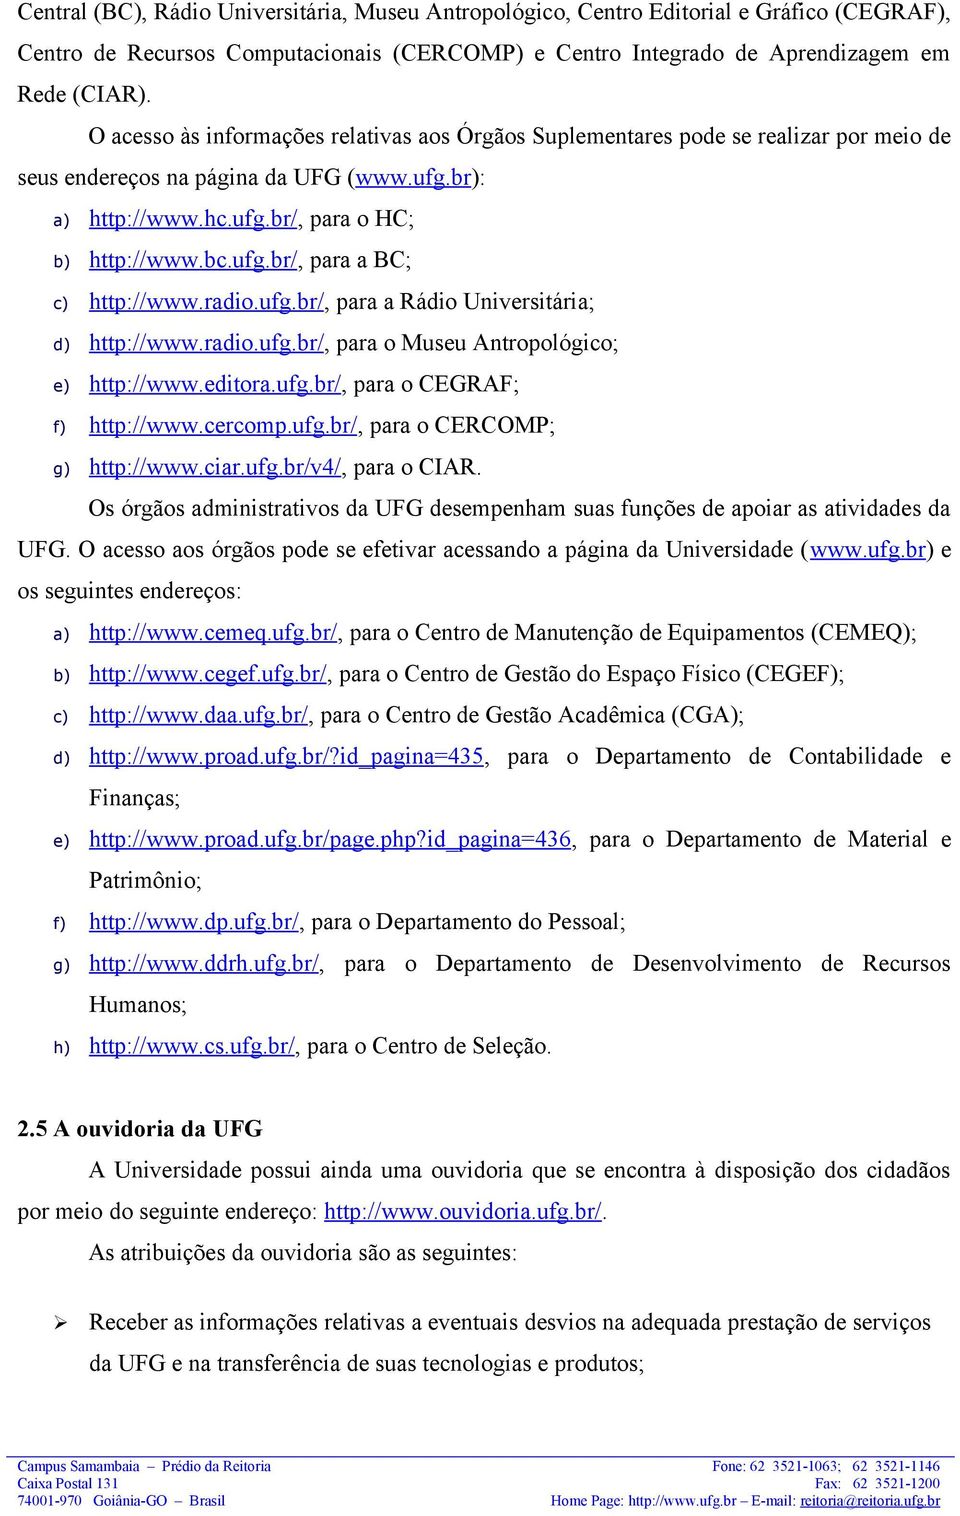 radio.ufg.br/, para a Rádio Universitária; d) http://www.radio.ufg.br/, para o Museu Antropológico; e) http://www.editora.ufg.br/, para o CEGRAF; f) http://www.cercomp.ufg.br/, para o CERCOMP; g) http://www.